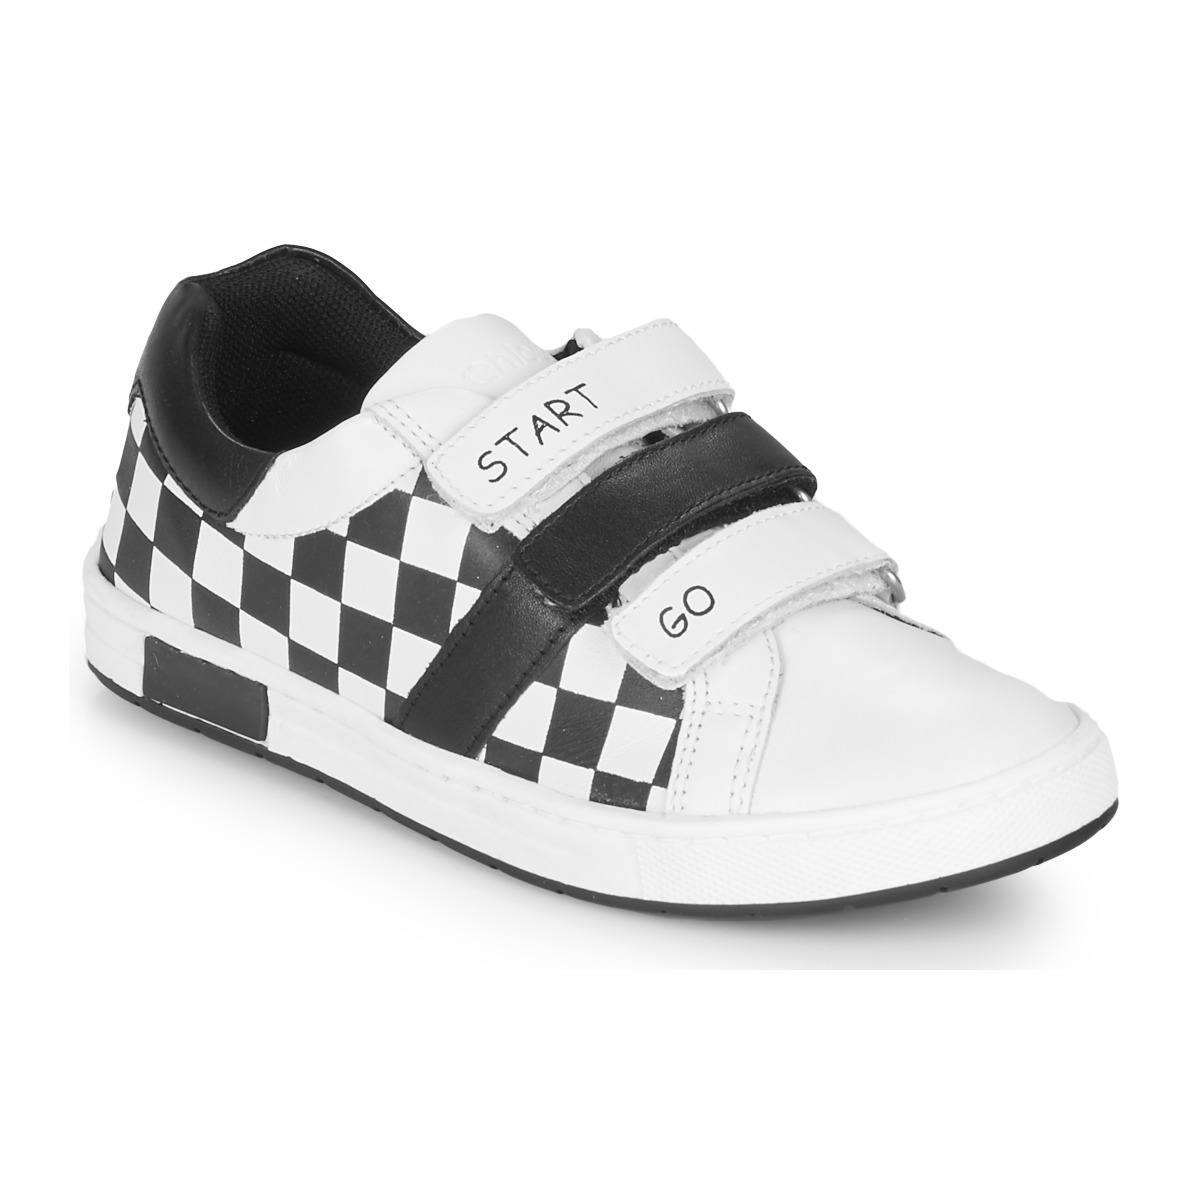 Παπούτσια Αγόρι Χαμηλά Sneakers Chicco CANDITO Άσπρο / Black